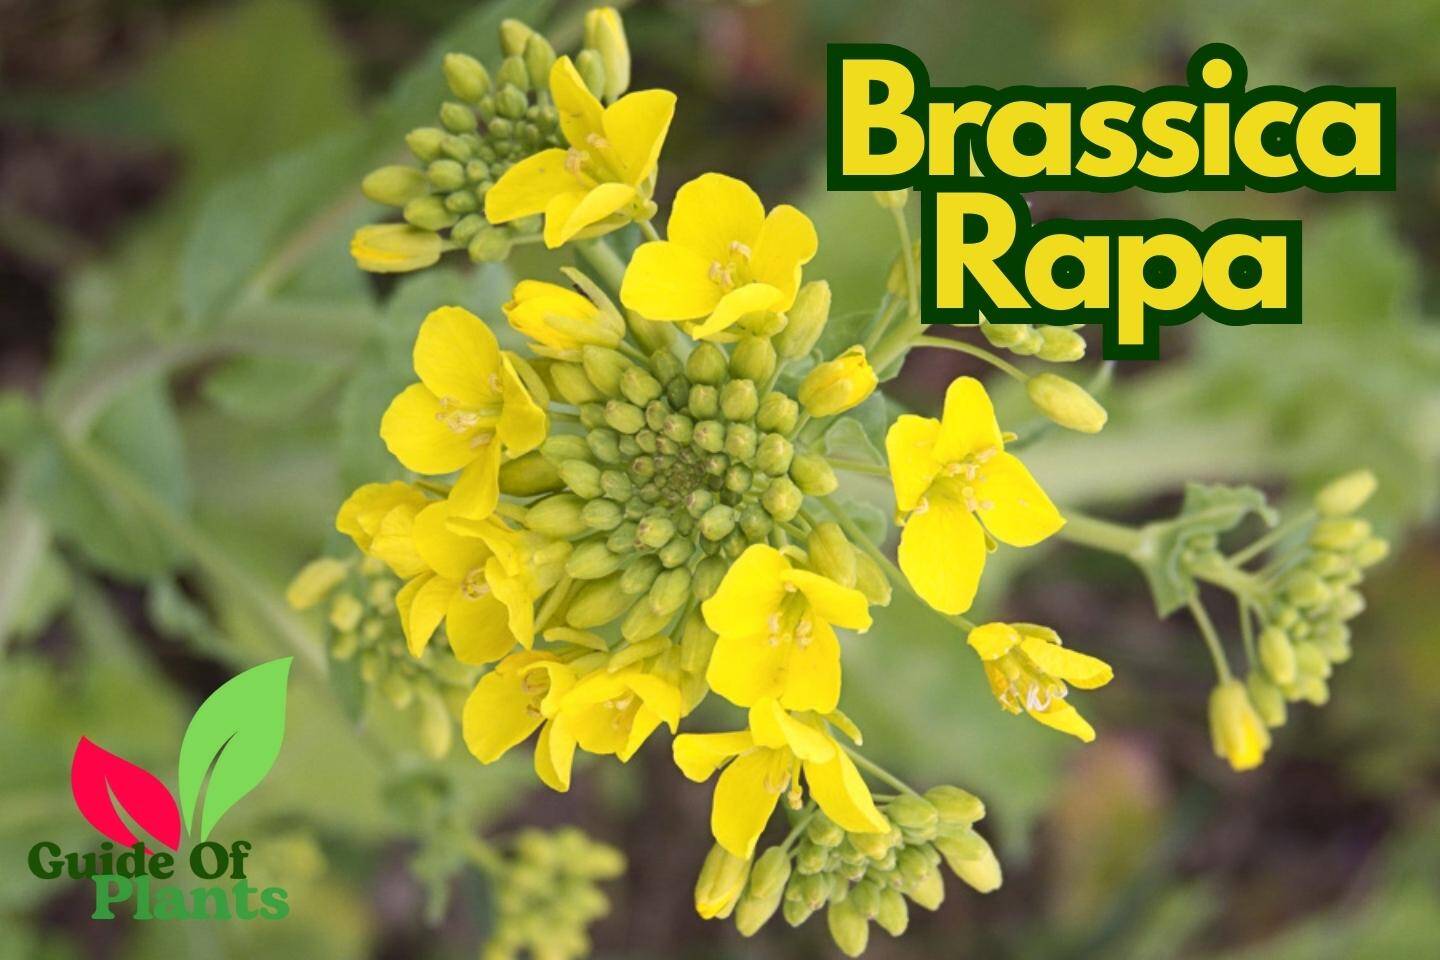 Brassica Rapa